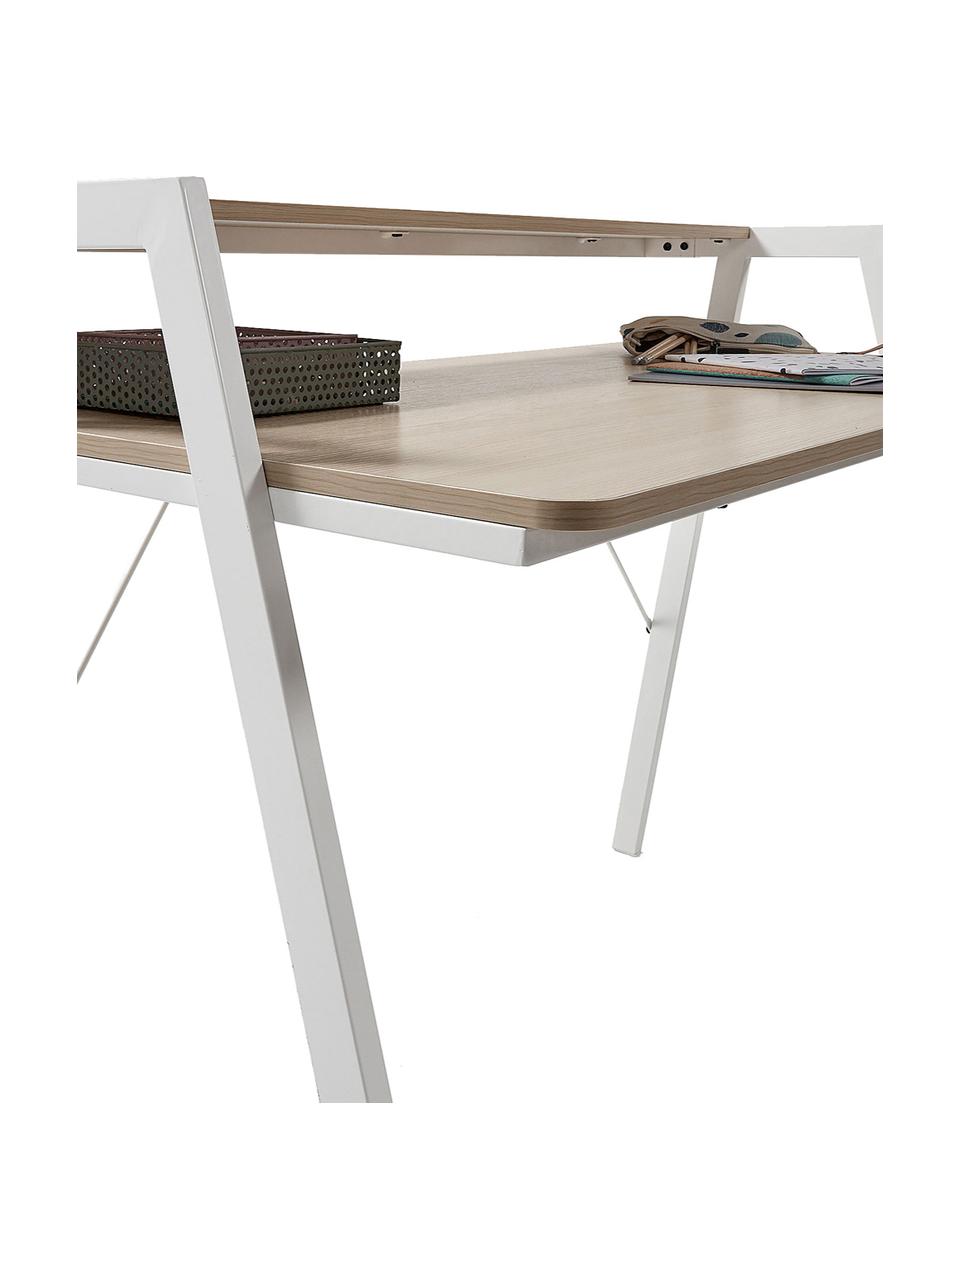 Dubový psací stůl Alanna, Dub, bílá, Š 115 cm, H 60 cm